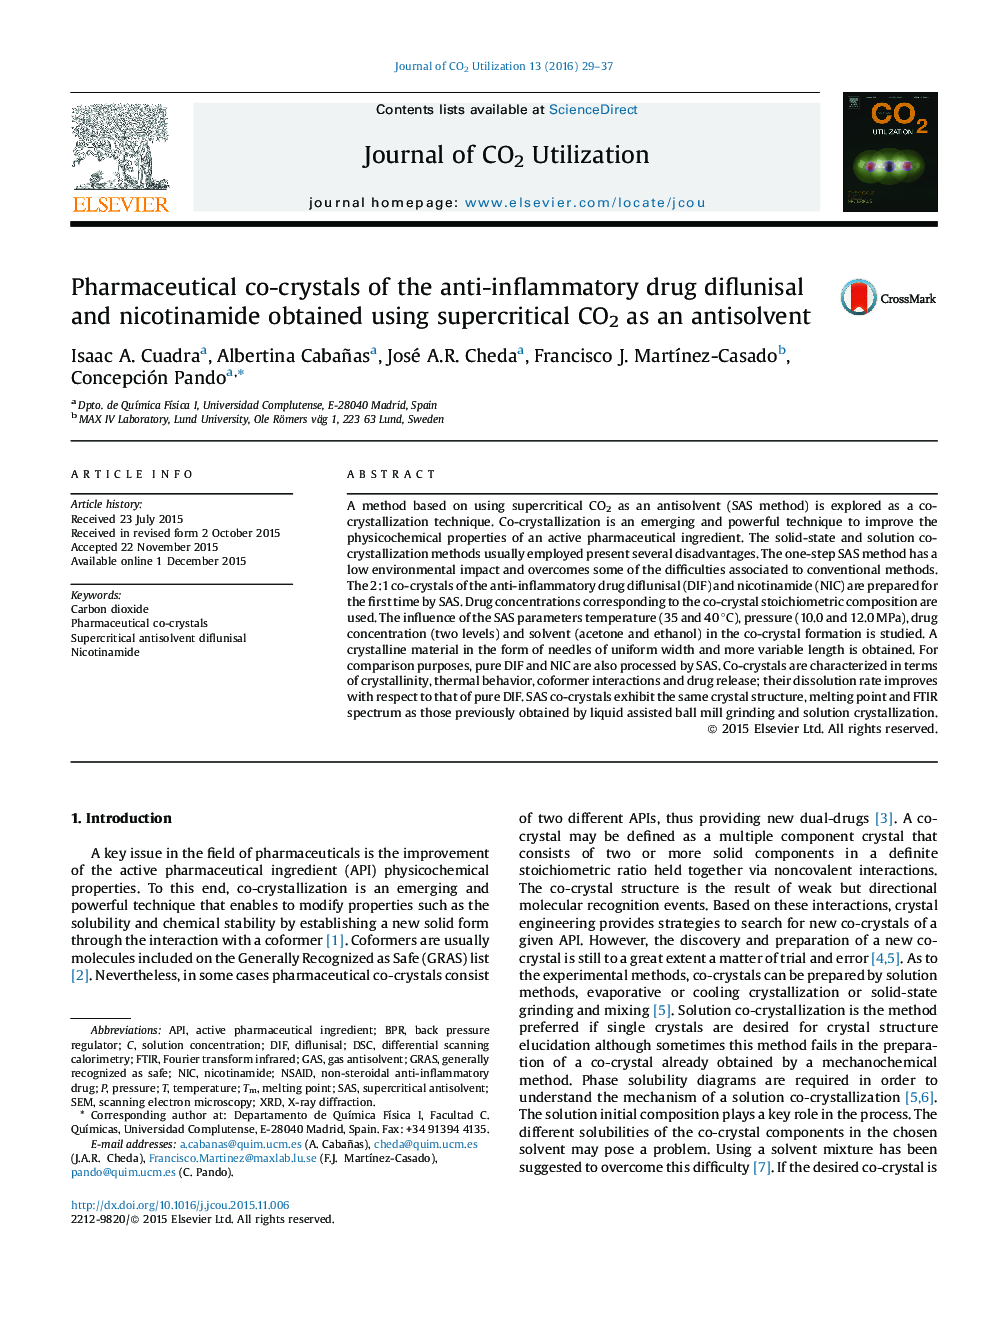 کریستال های co دارویی diflunisal داروی ضدالتهابی و نیکوتین آمید با استفاده از CO2 فوق بحرانی به عنوان ضد حلال